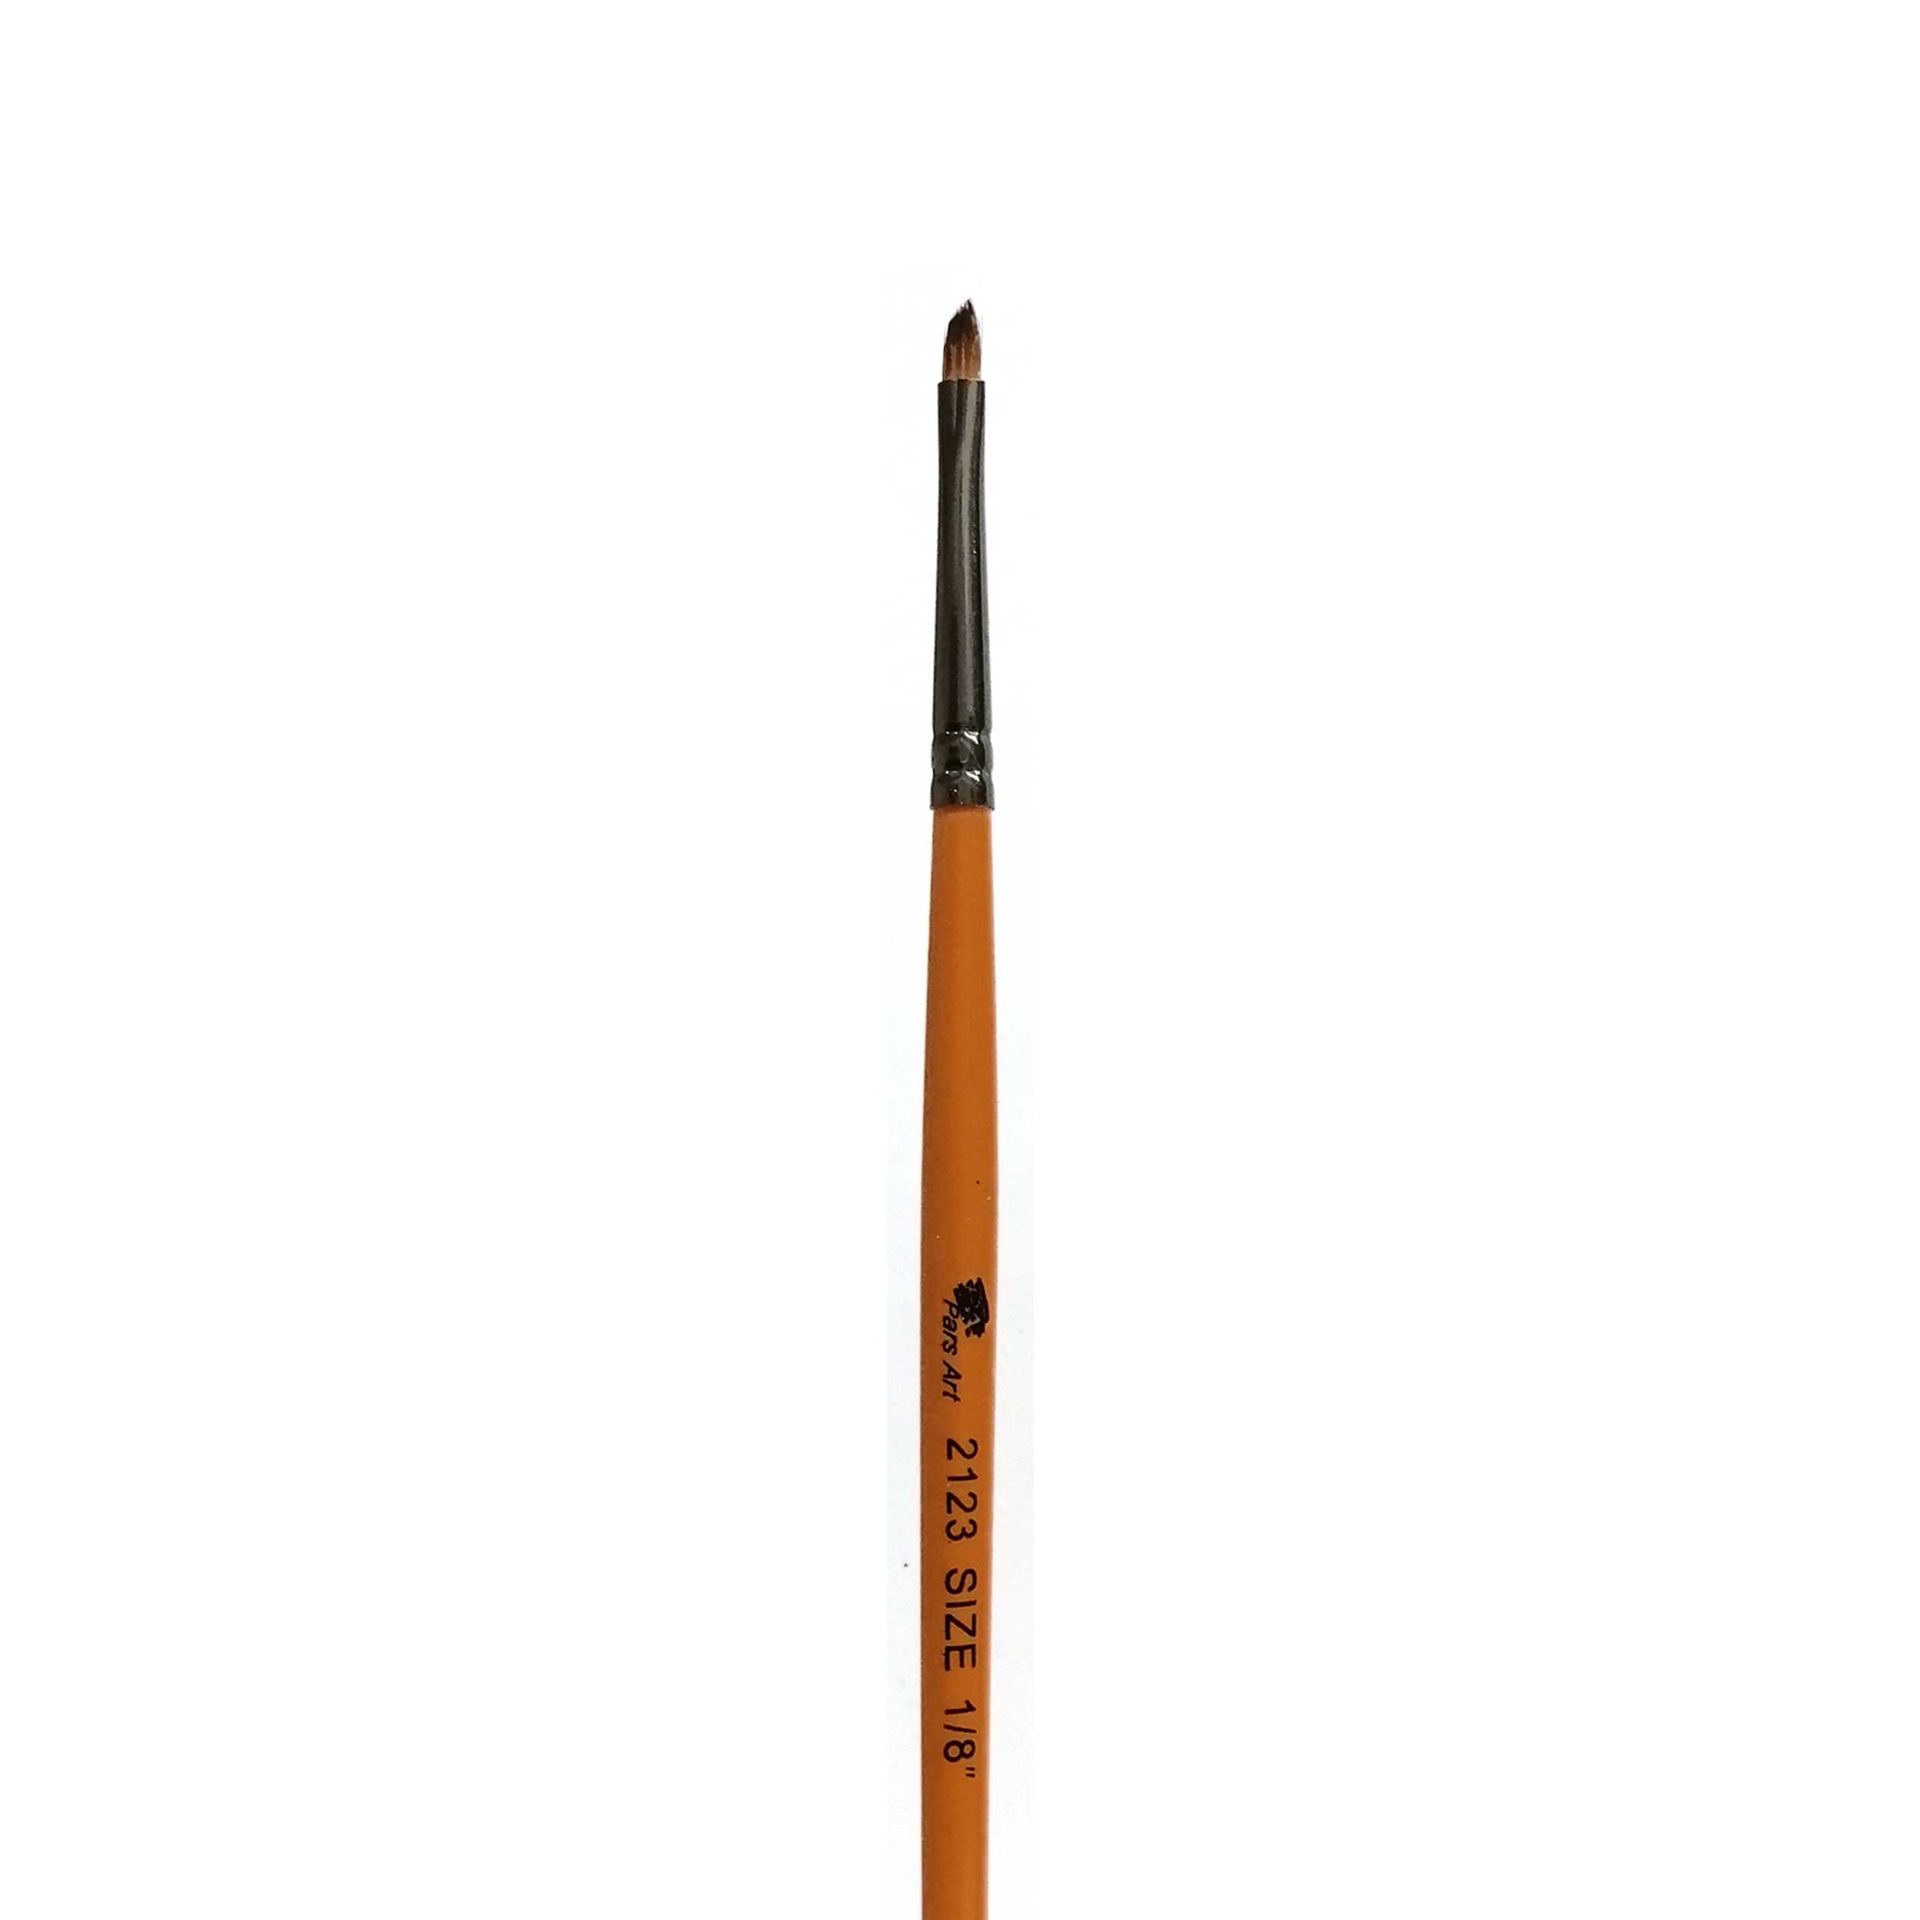 قلمو پارس آرت مدل قلم مو سرکج قلممو پارس آرت سری 2123 شماره 1/8